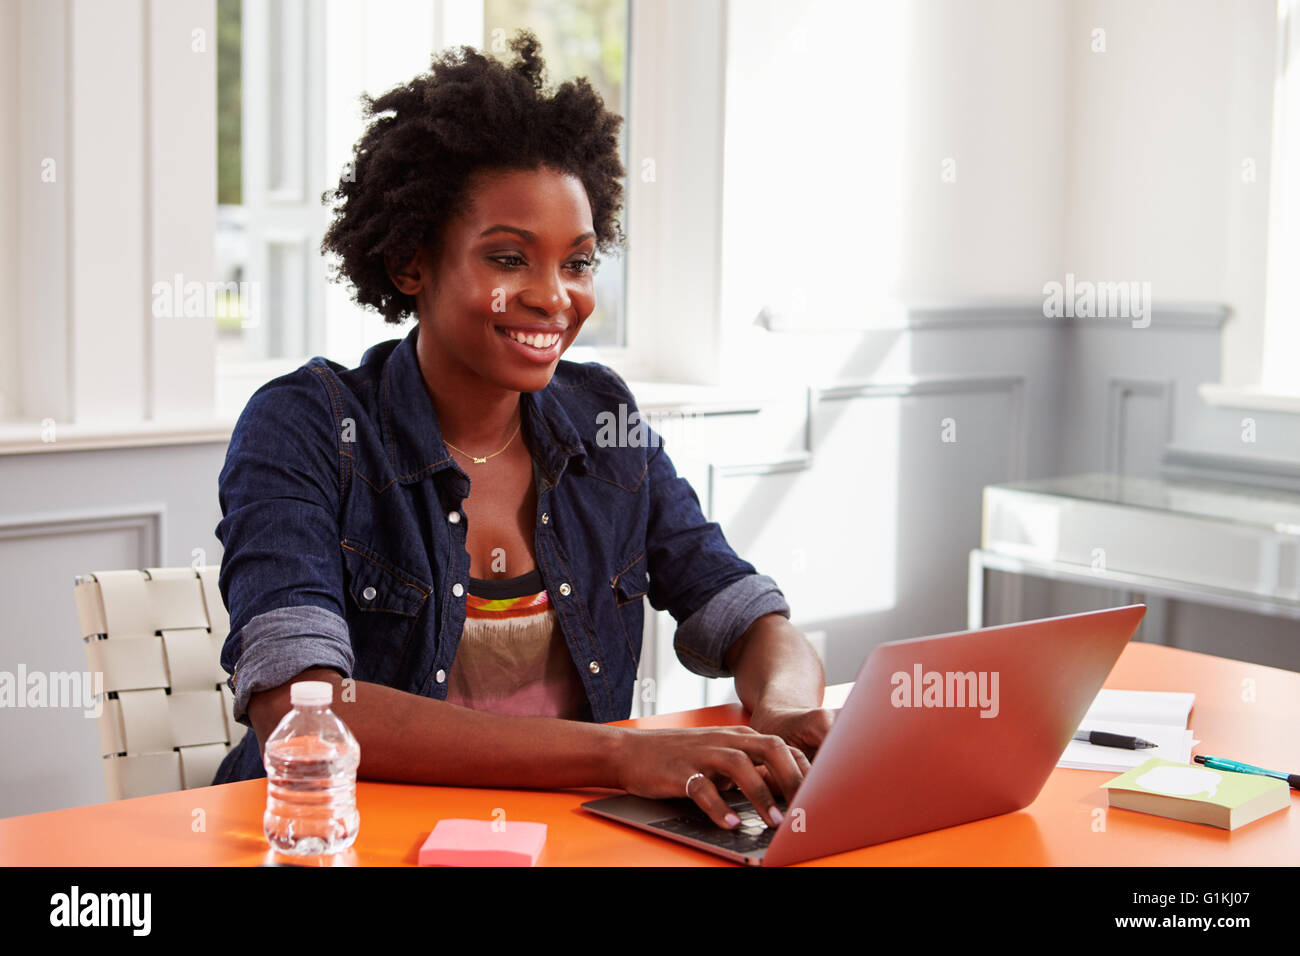 Jeune femme noire à l'aide d'un ordinateur portable à un bureau, close-up Banque D'Images